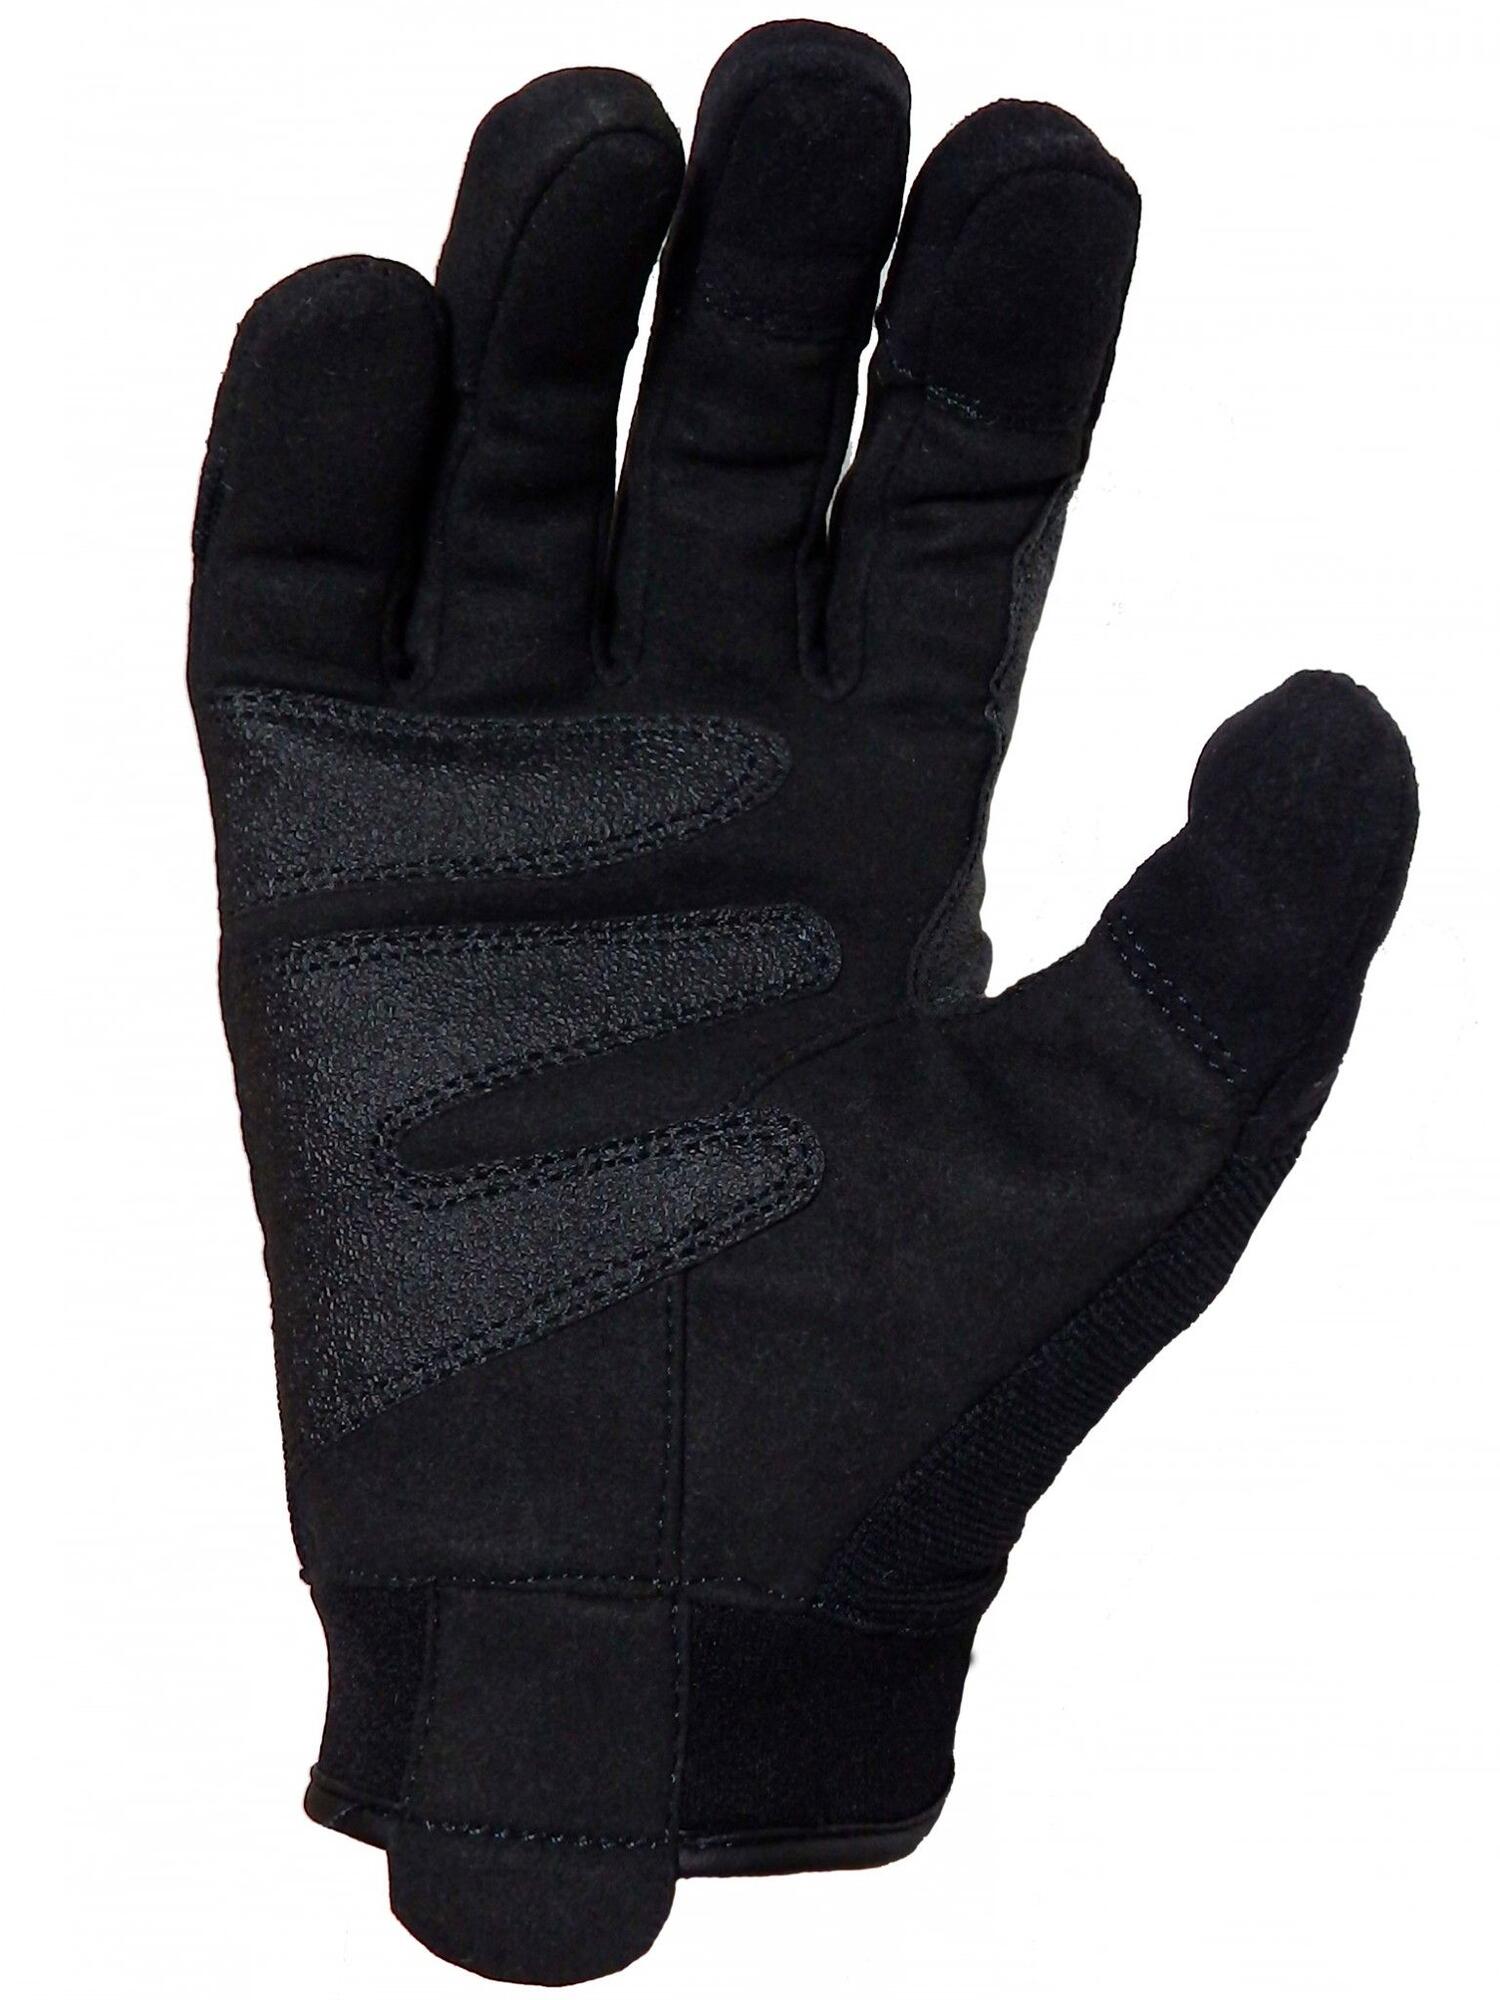 Højde tidsplan sommer Køb PGD200 Snitsikre handsker med Touch funktion og knobeskyttelse -  Tilbud: 589,00 - VAGT & SECURITY / Handsker,-